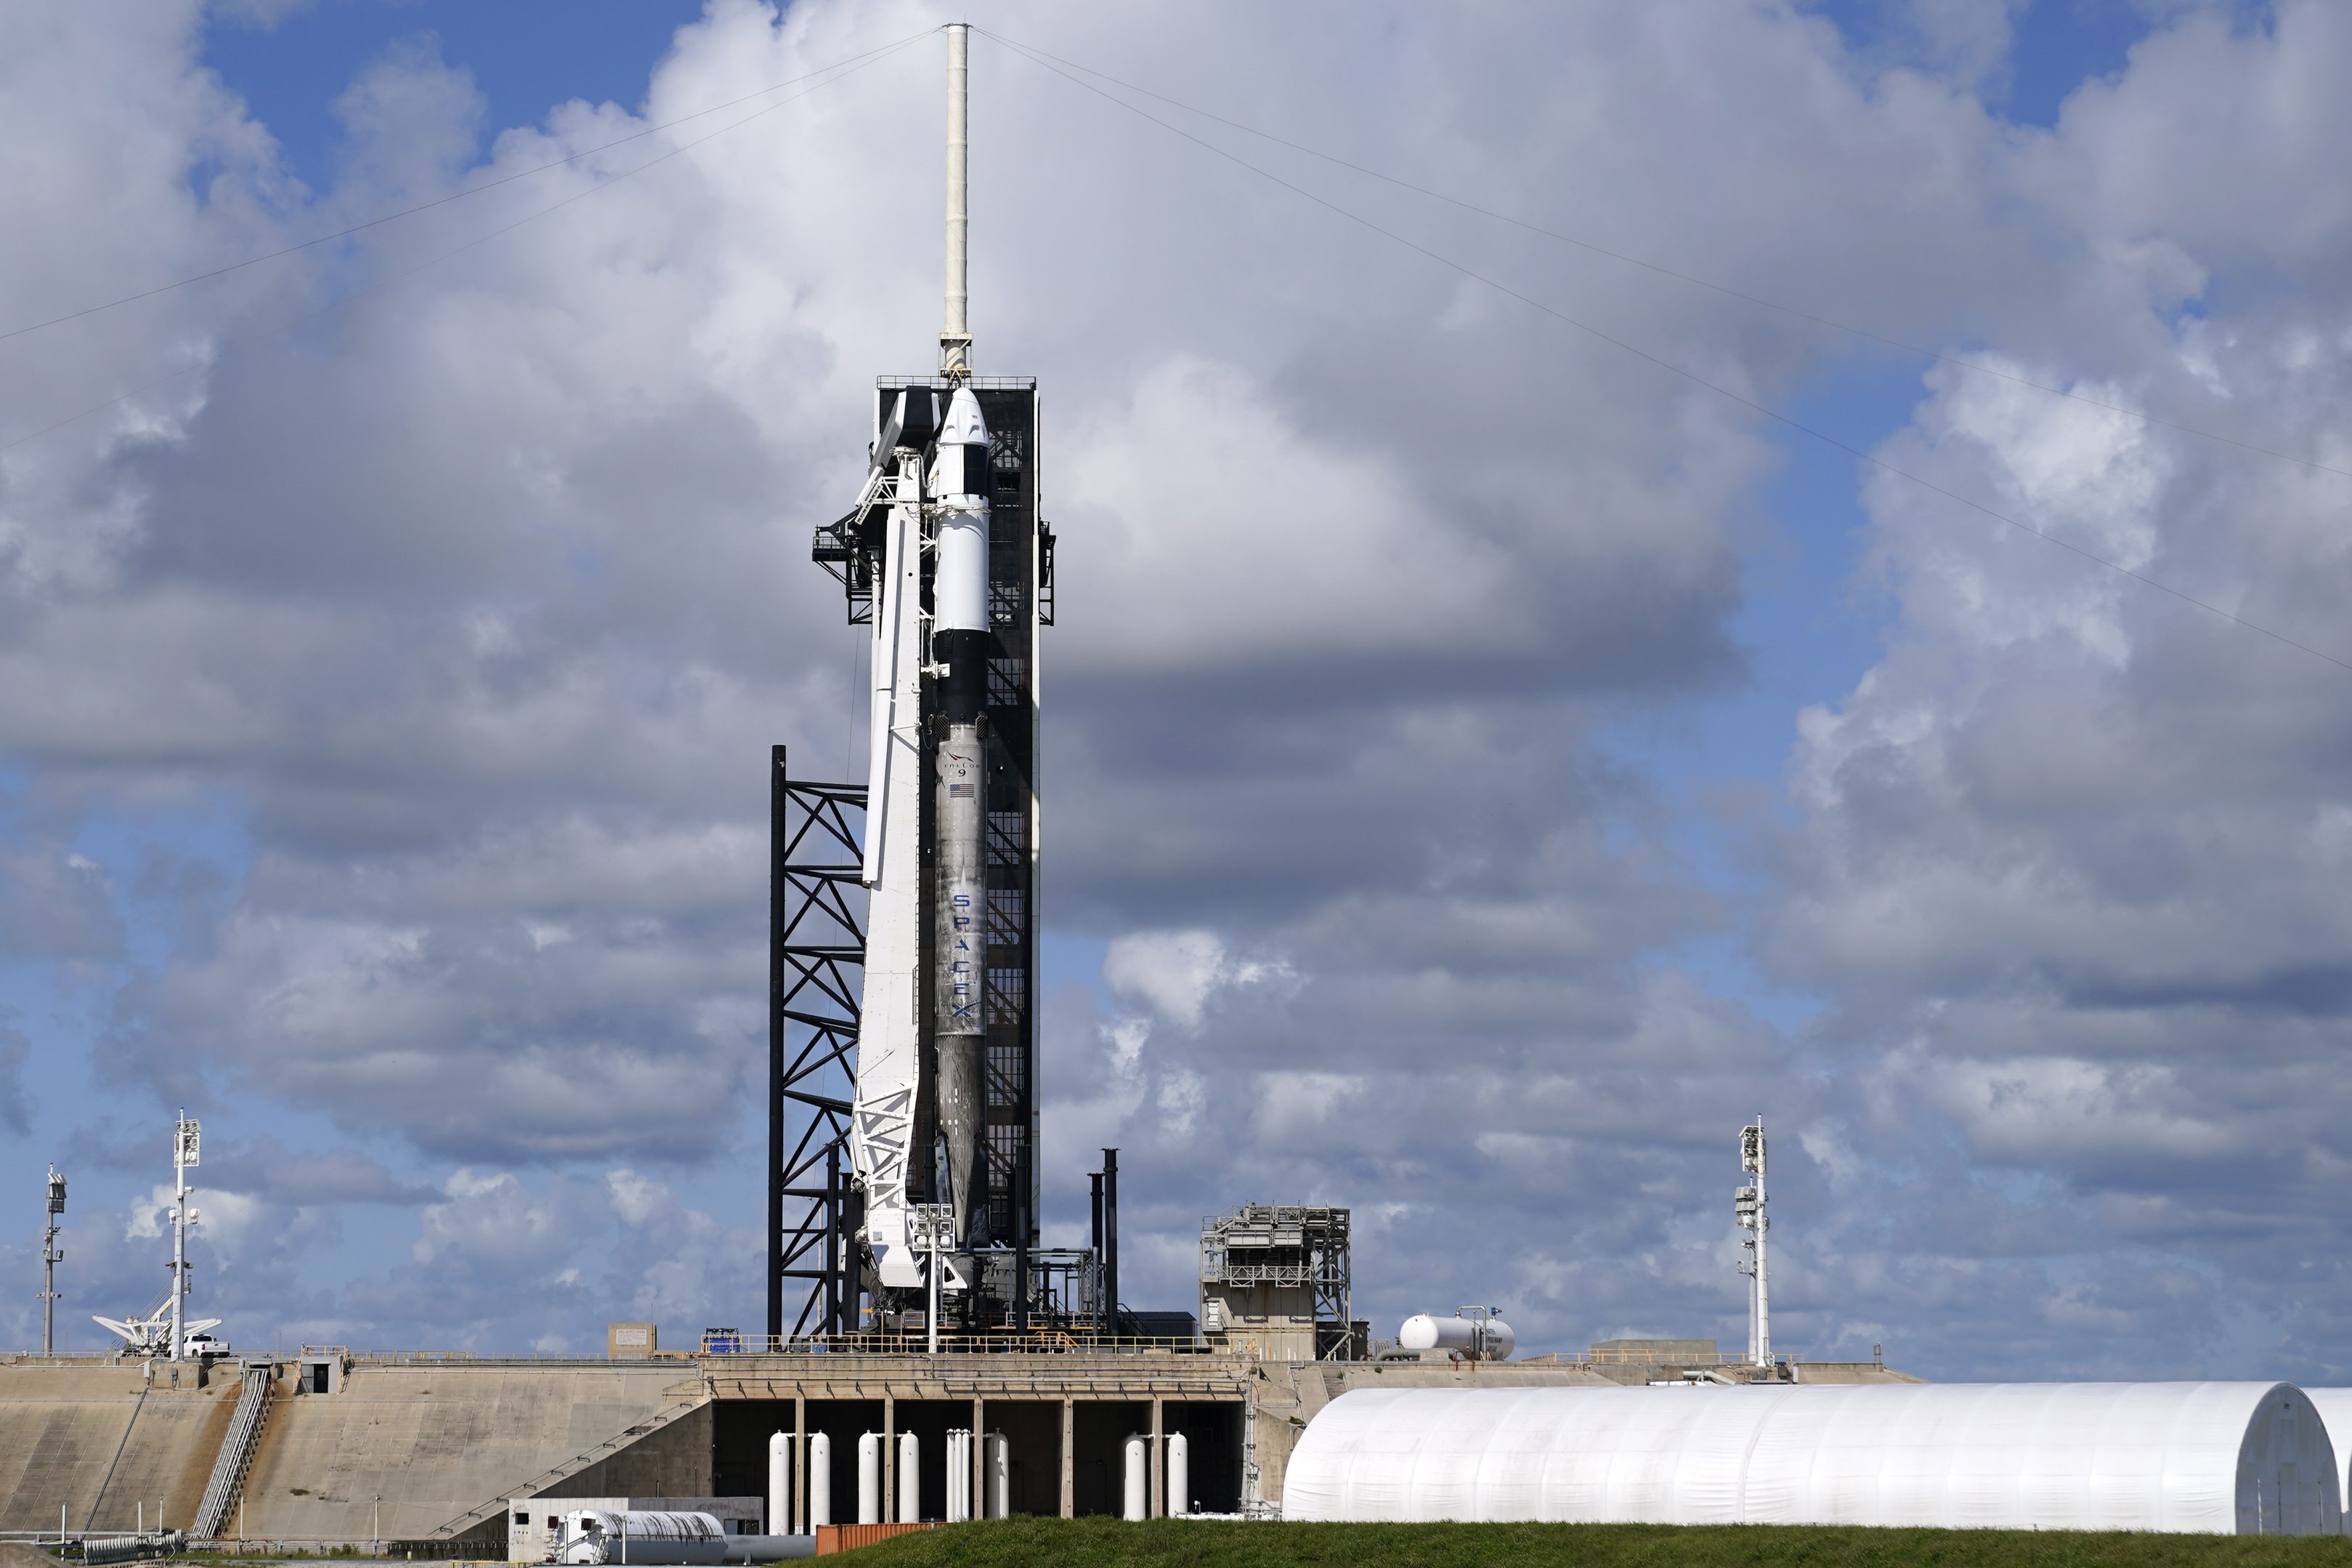 Raketa SpaceX Falcon 9 pred štartom na nízku obežnú dráhu Zeme